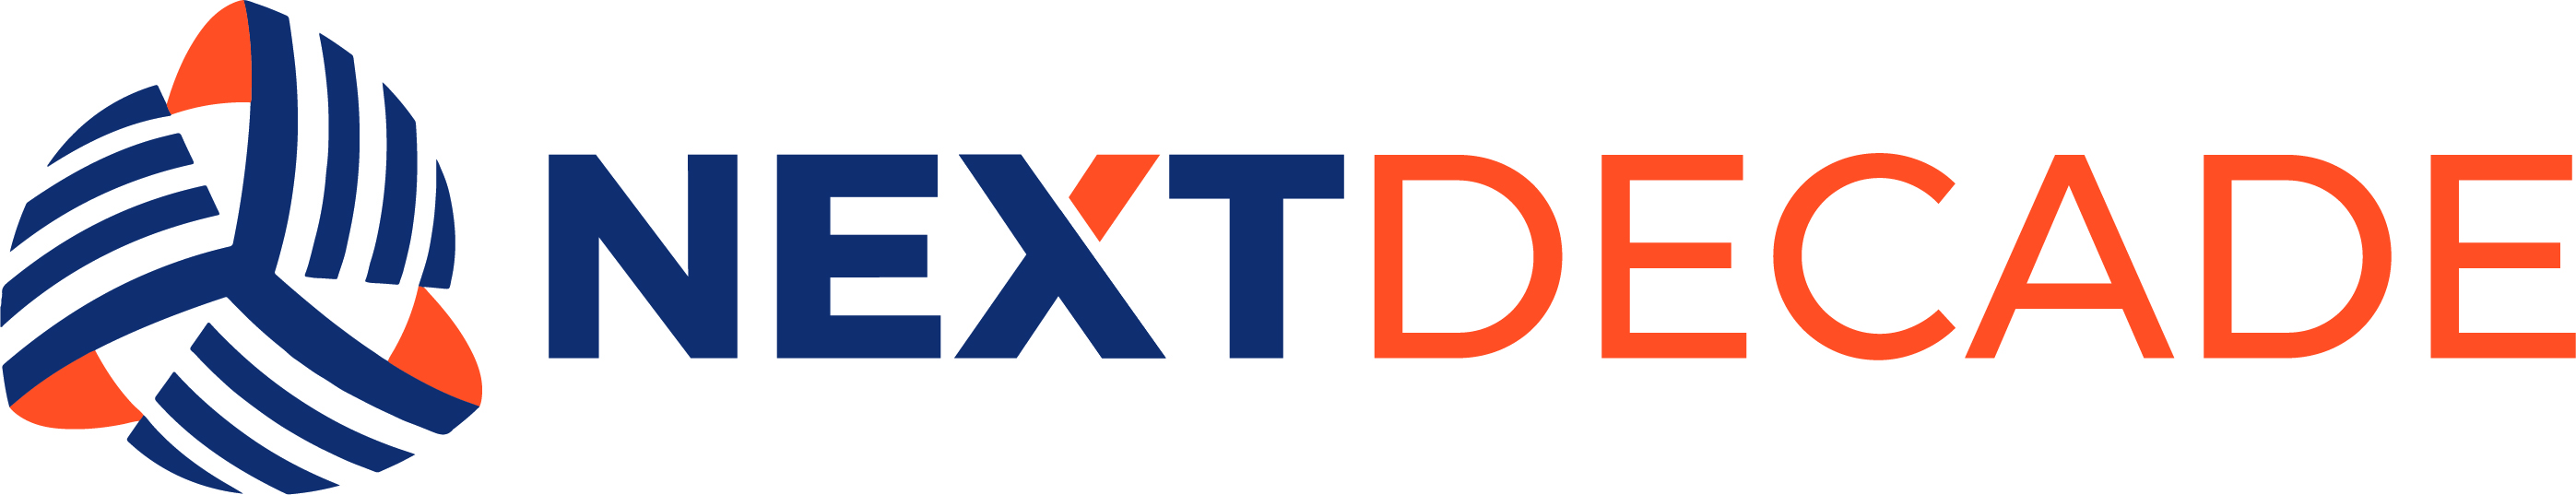 logo for NextDecade LNG, LCC